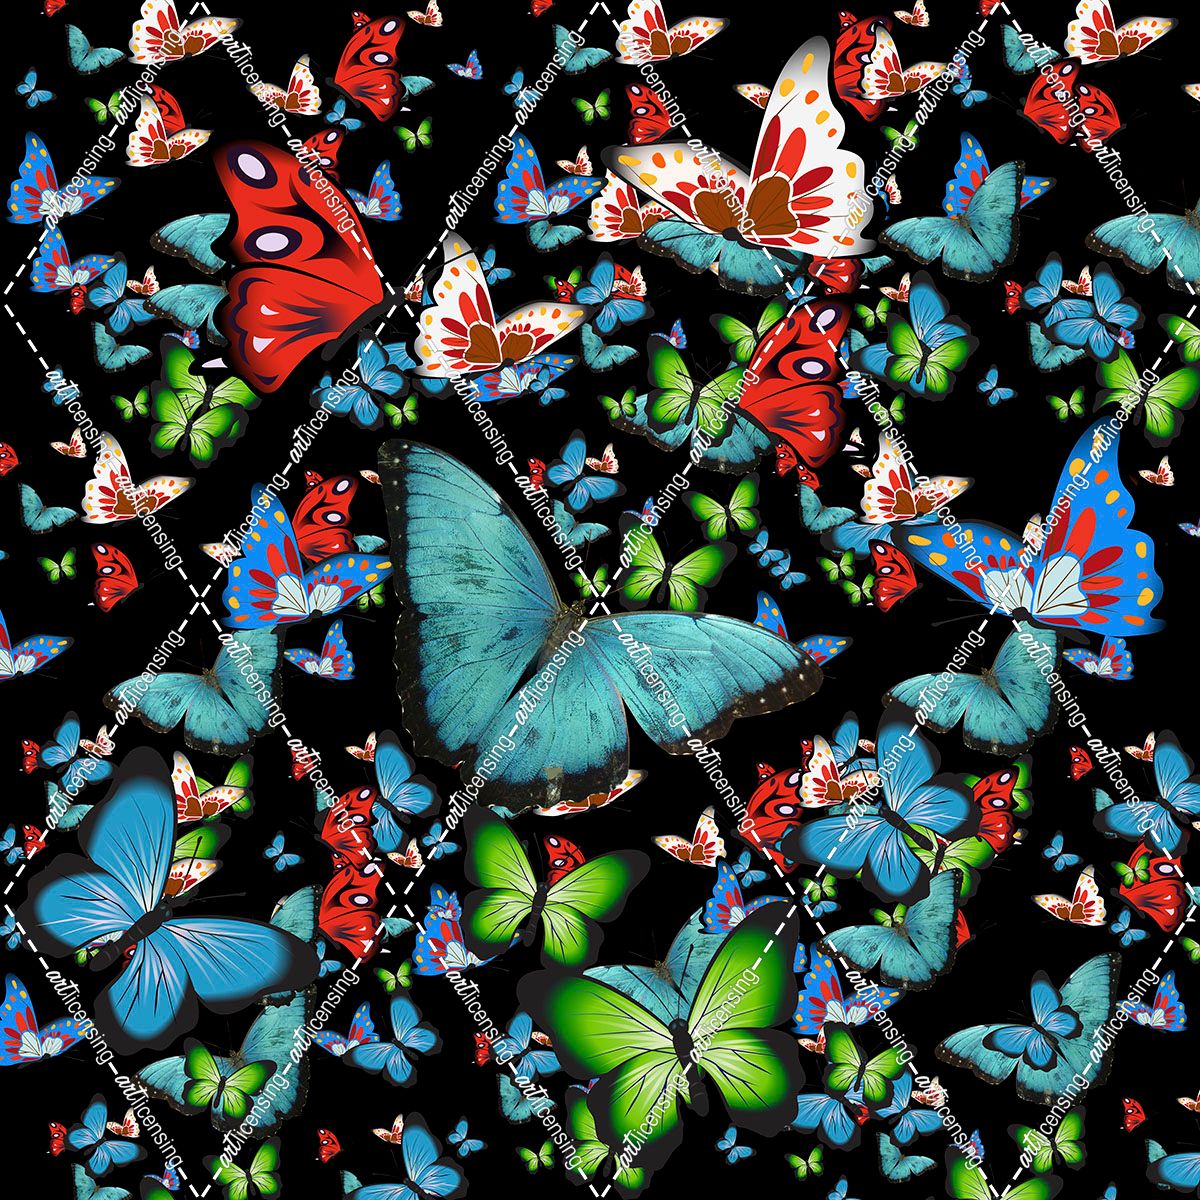 Butterfly Art A6